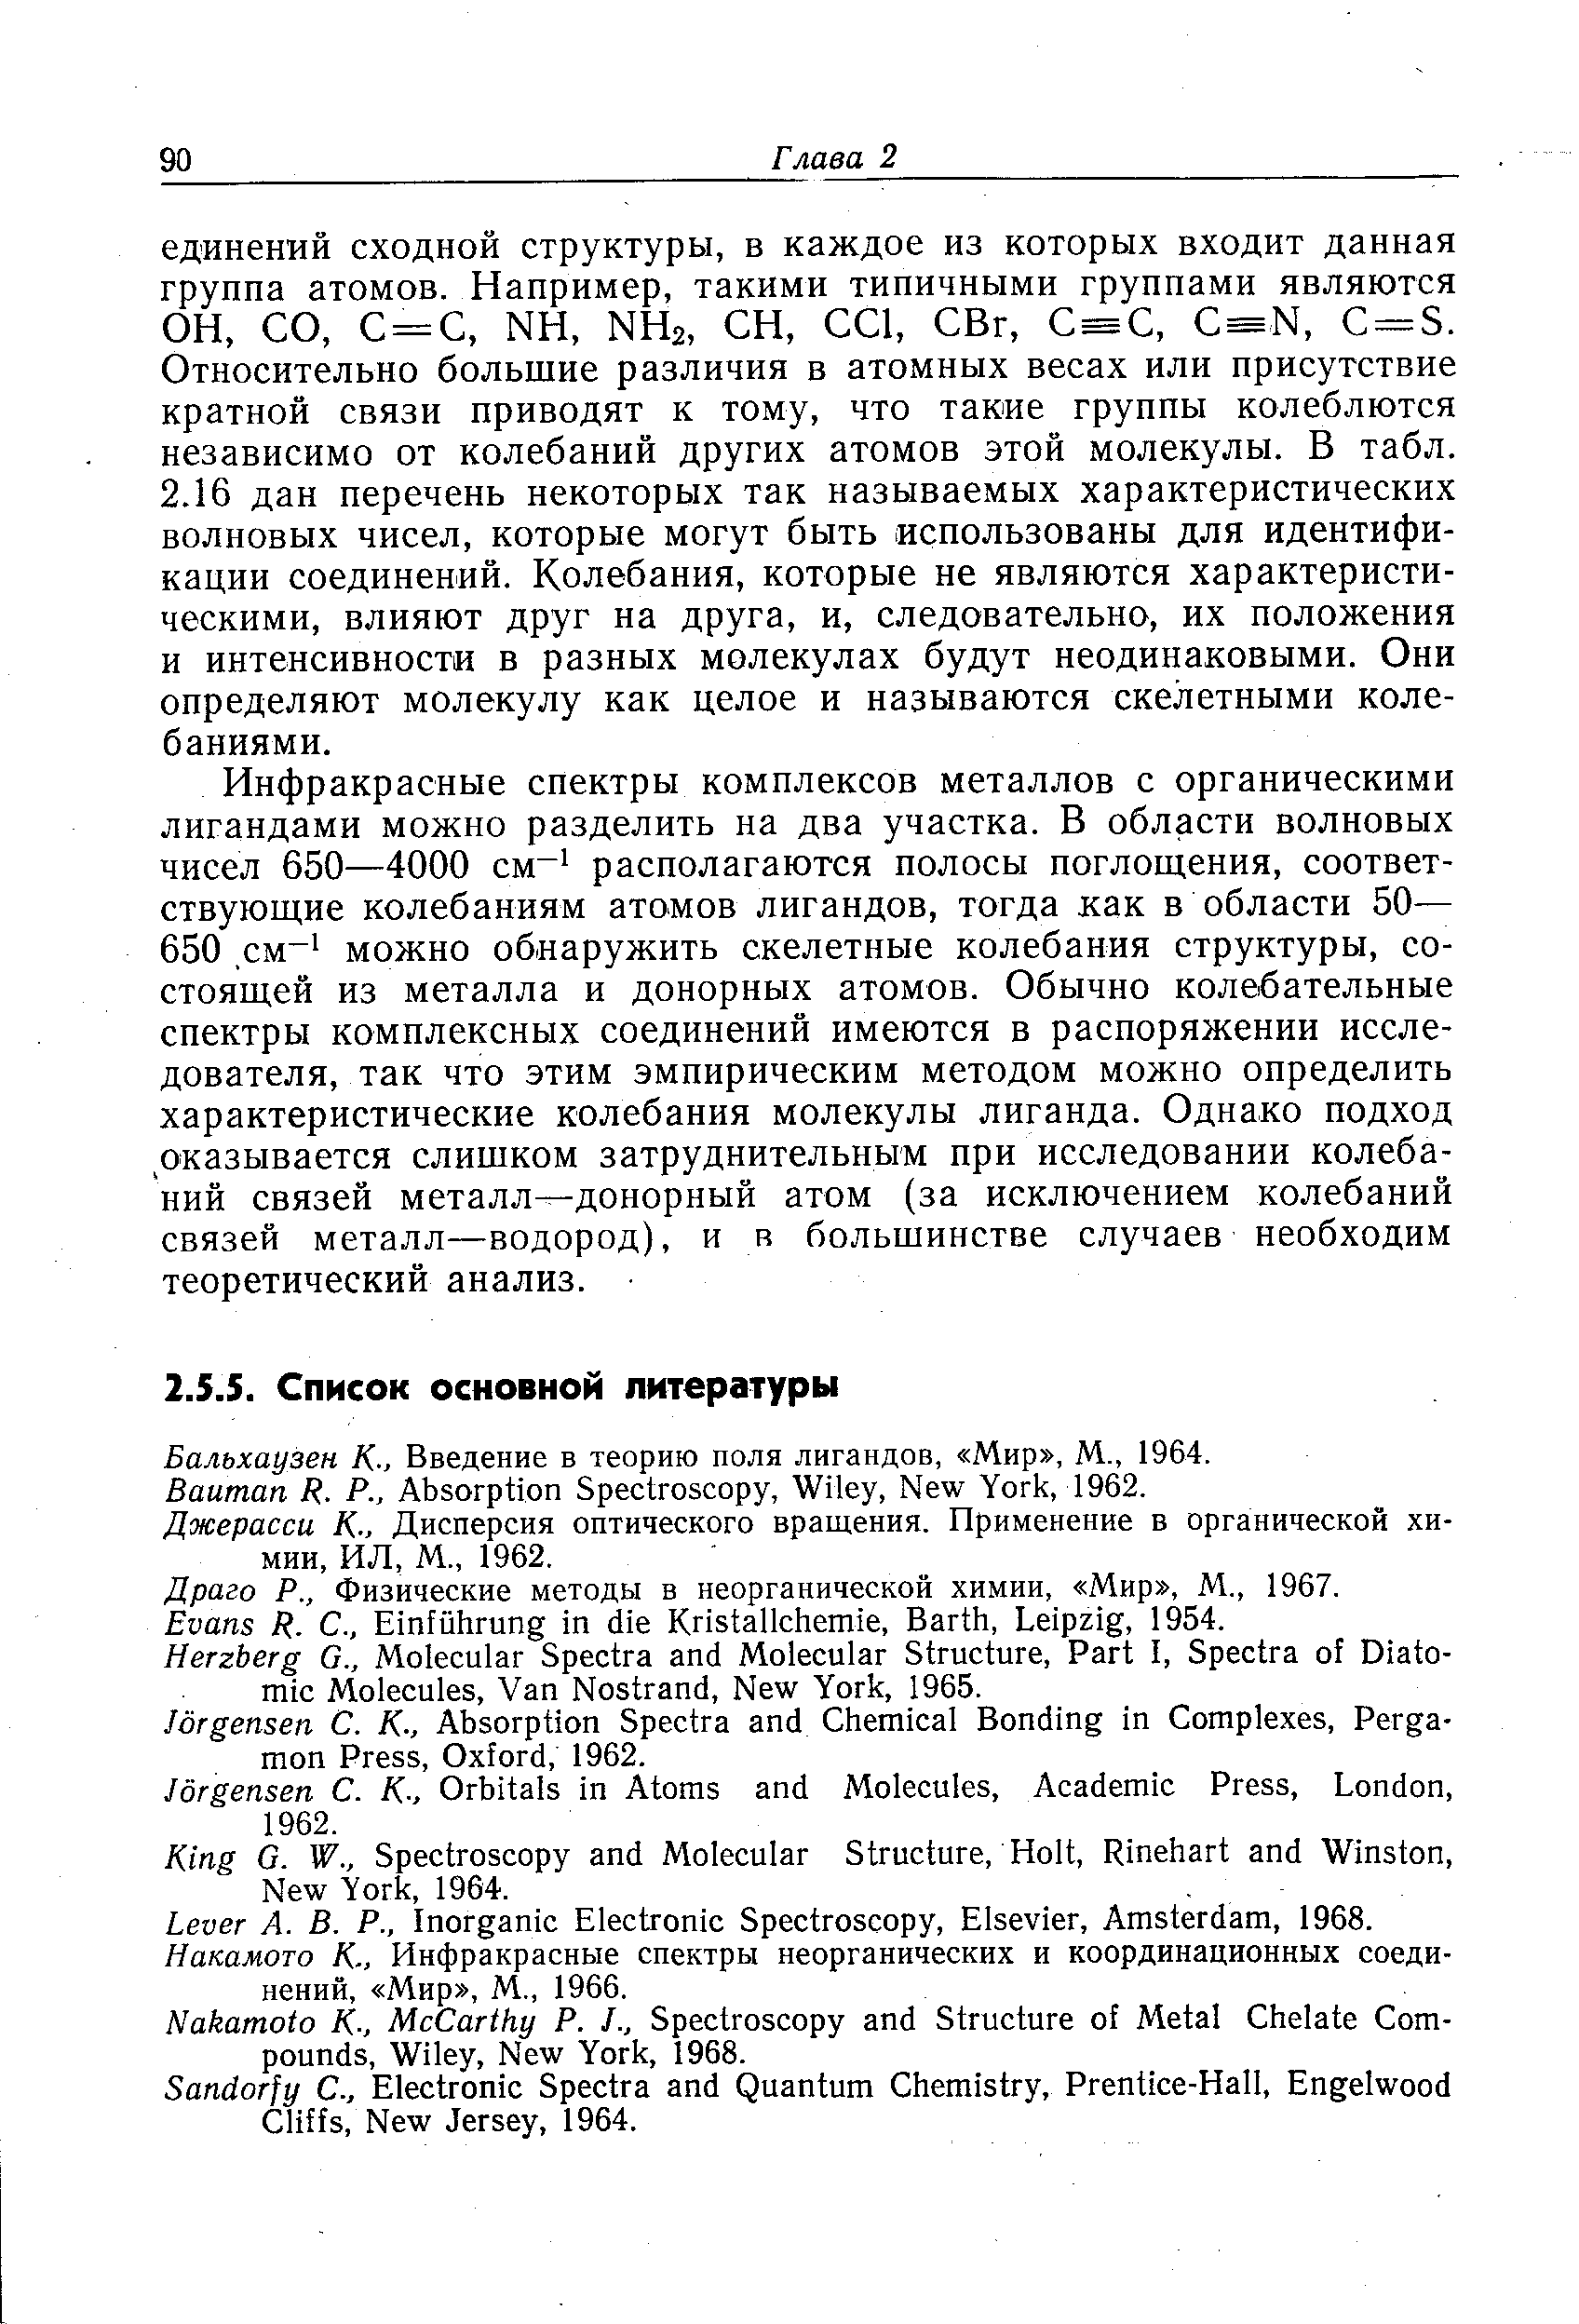 Бальхаузен К-, Введение в теорию поля лигандов, Мир , М., 1964.